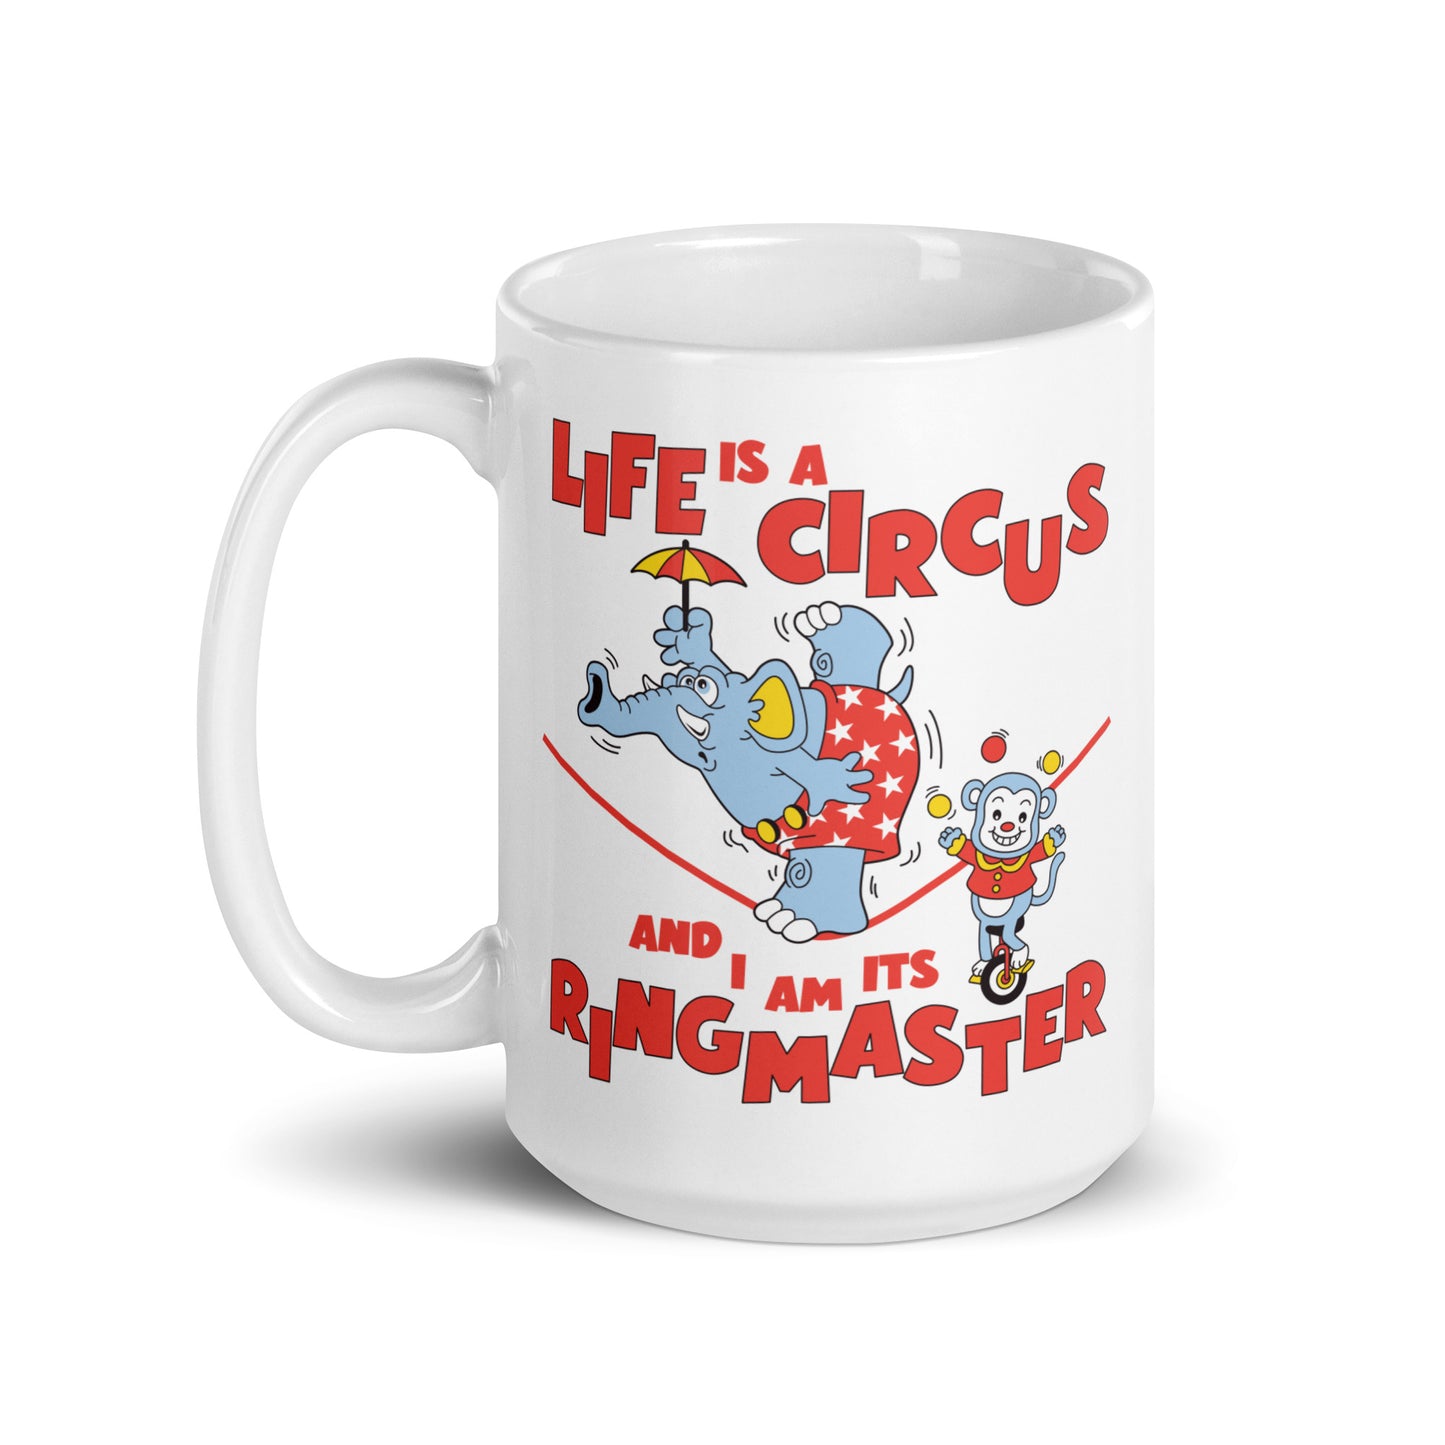 Life is a Circus mug